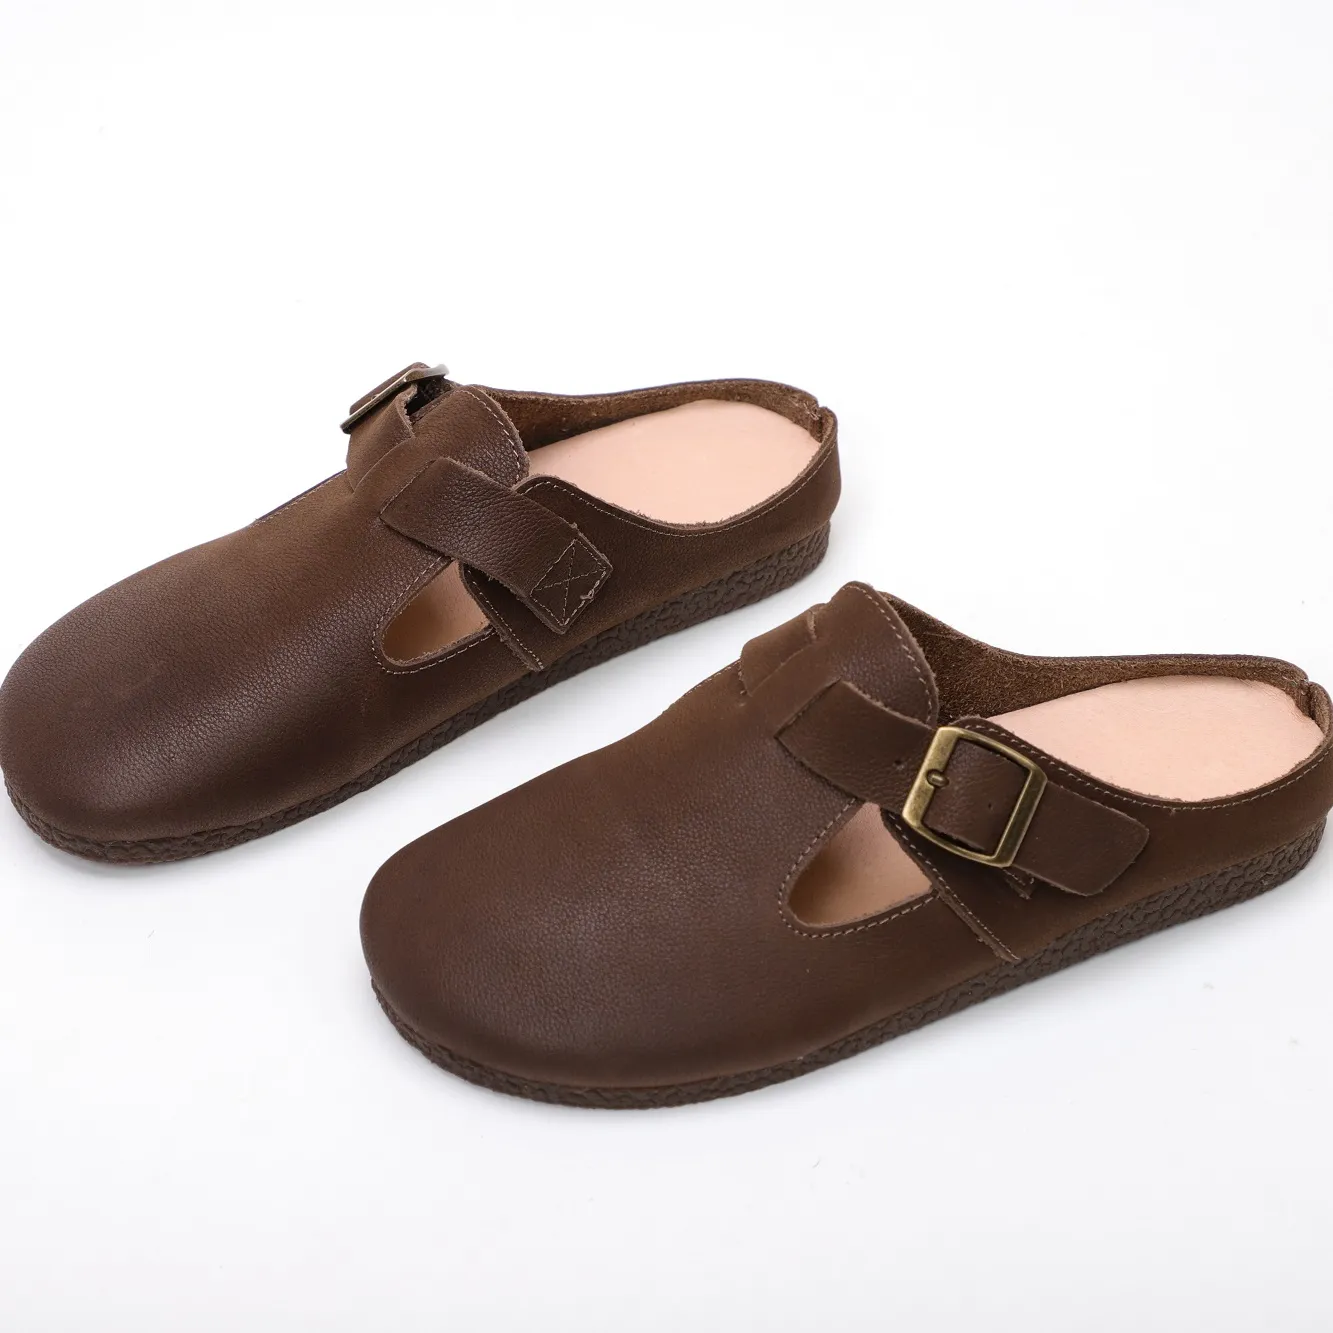 Factory Price 100% Genuine Leather rubber birkenstocks women platform birkenstocks best walking shoes for women